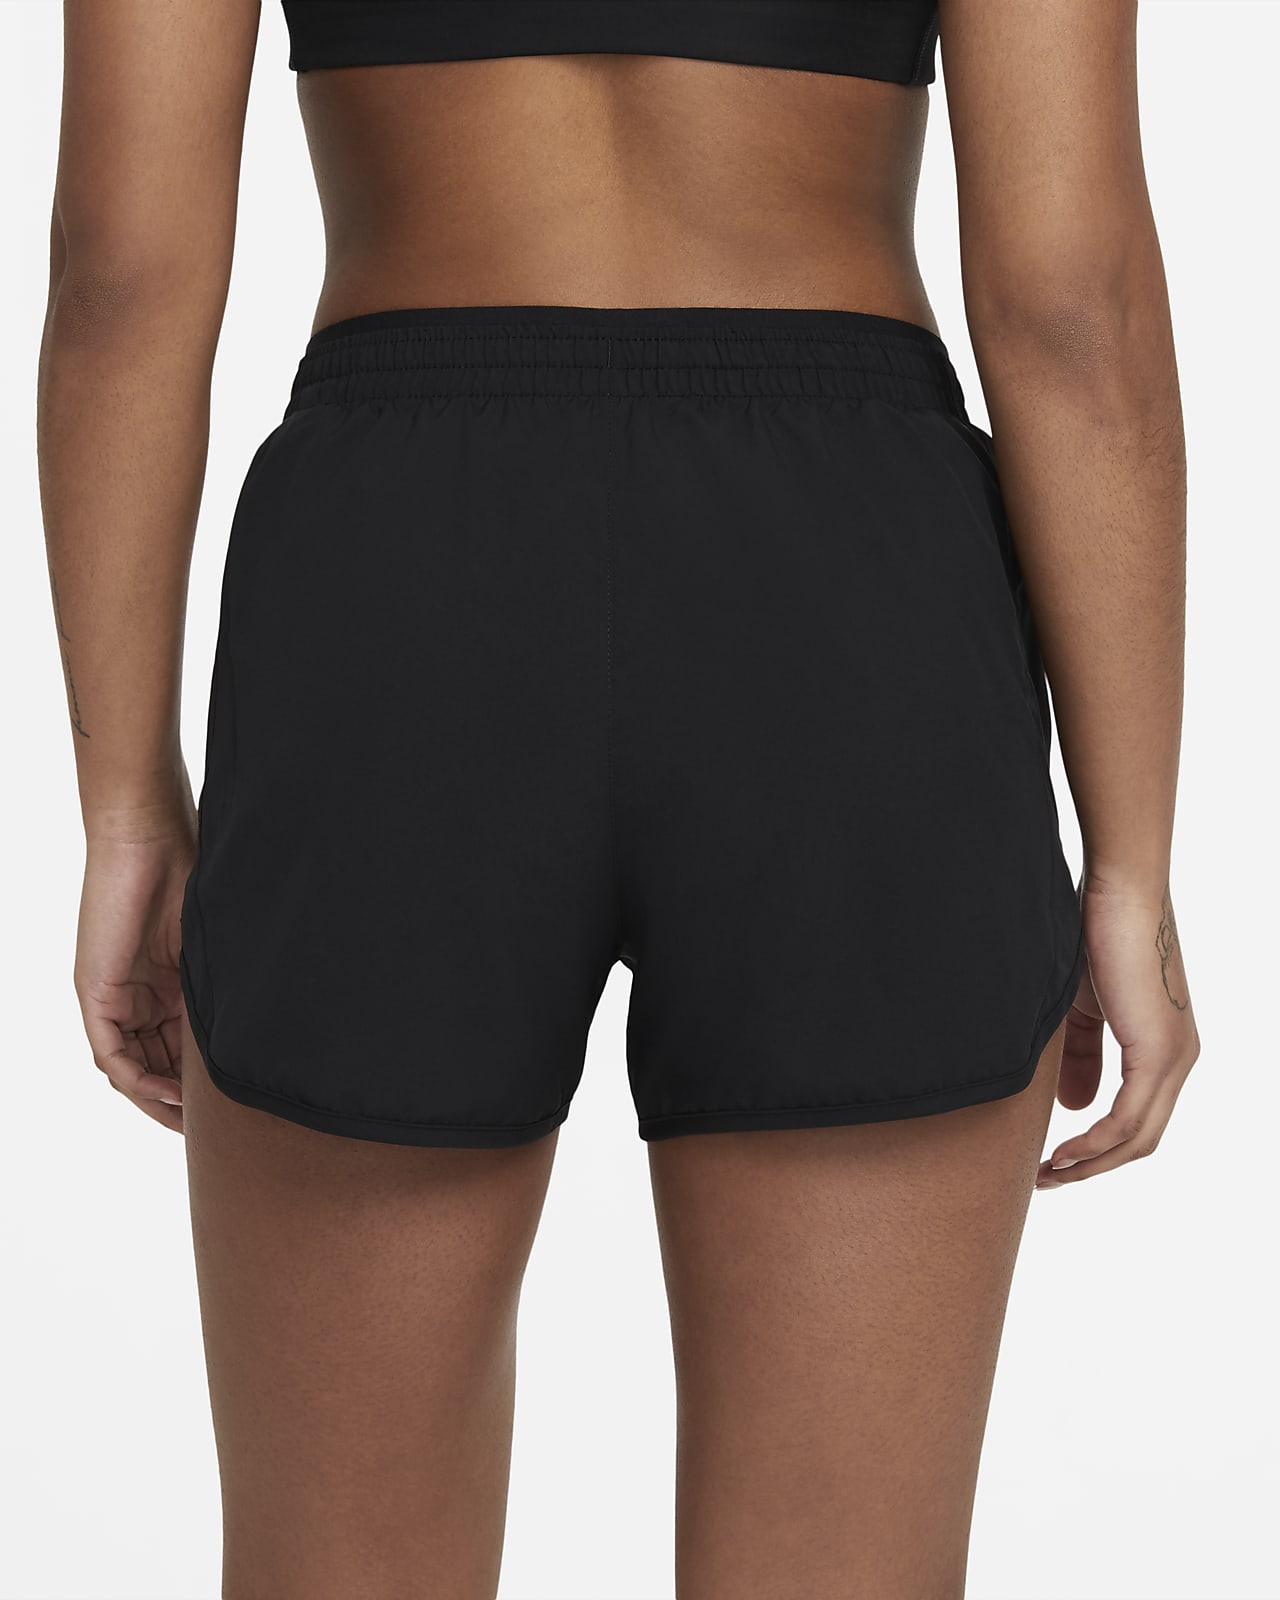 descanso argumento Estudiante Shorts de running de 8 cm para mujer Nike Tempo Luxe. Nike.com